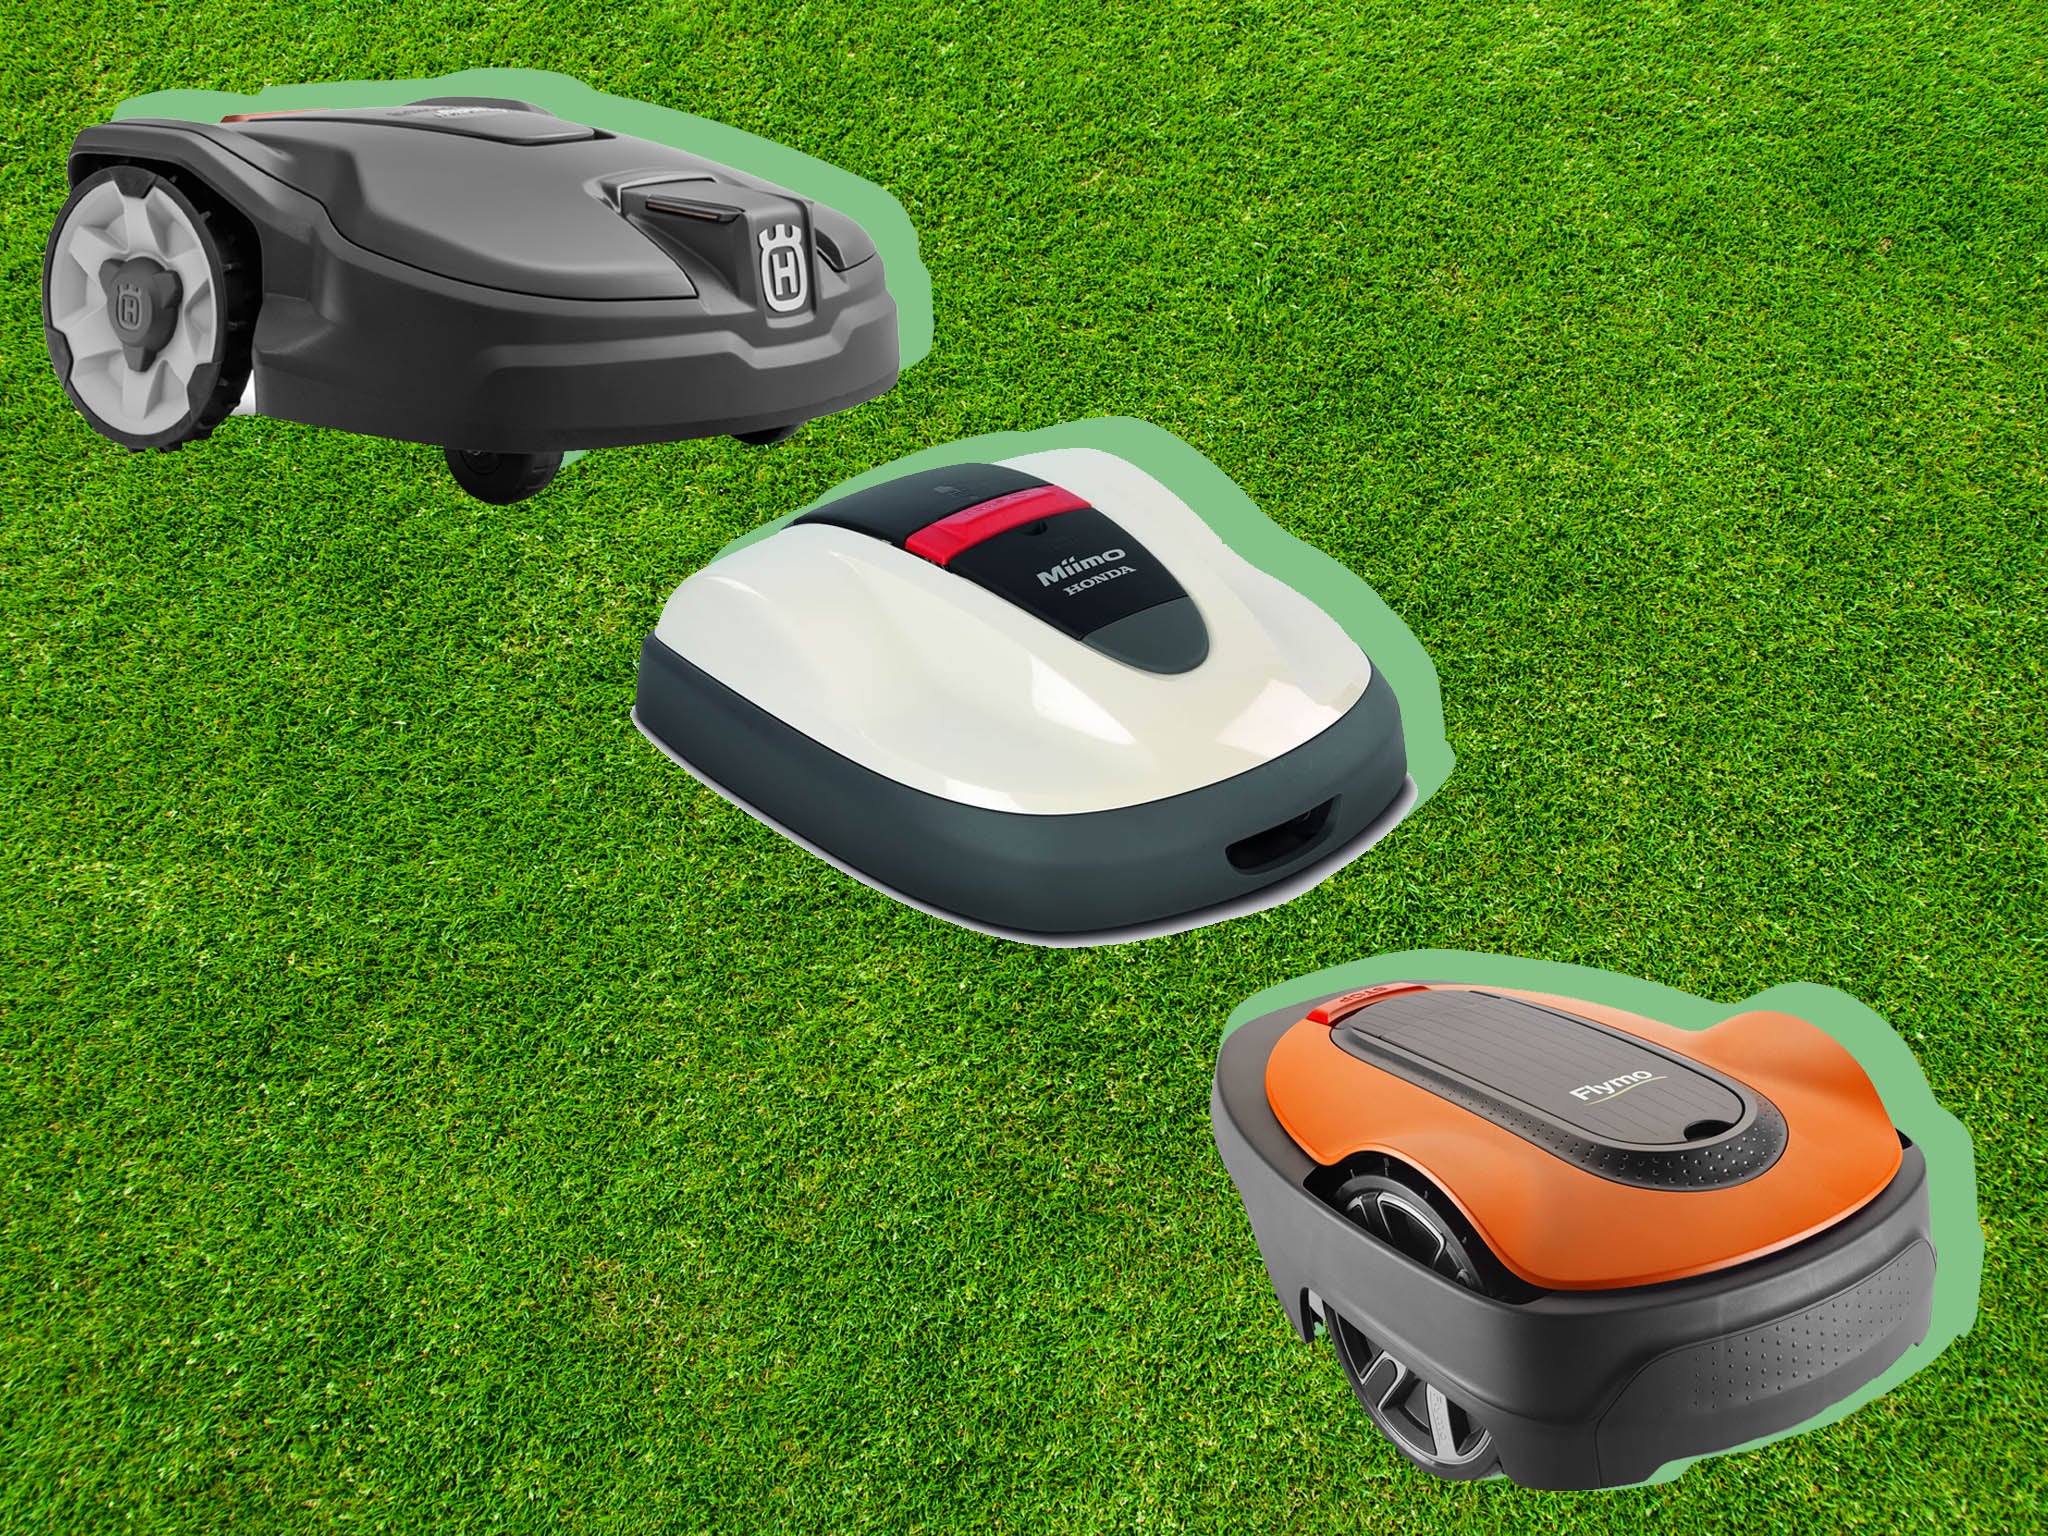 Lawn Mowing Simulator Codes June 2020